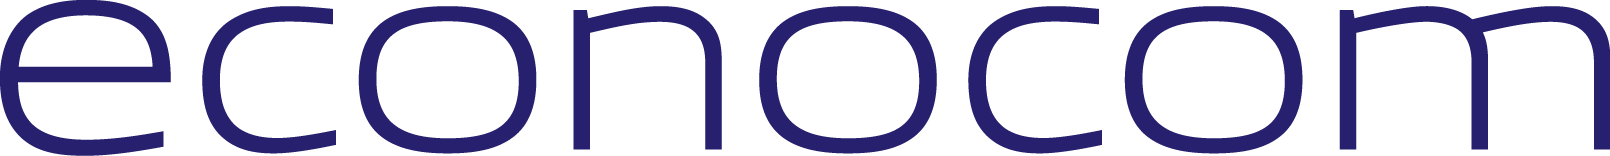 logo_econocom_bleu_cmjn_hd.png